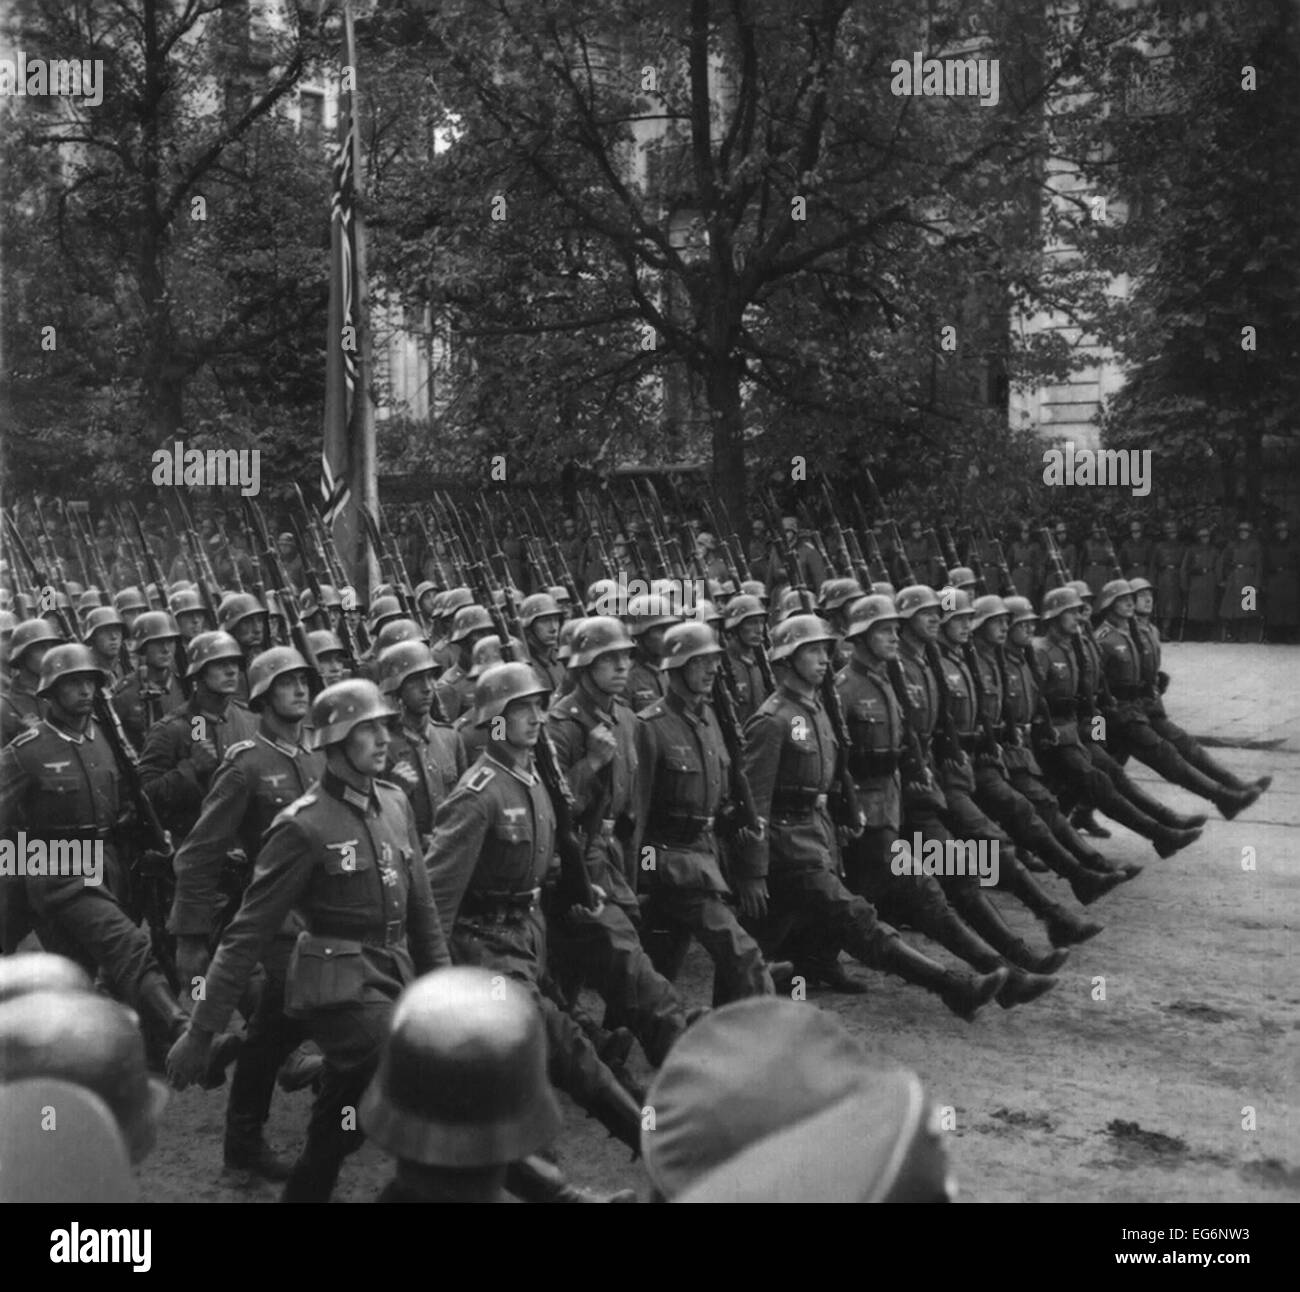 Stechschritt deutsche Truppen in einer Siegesparade in Warschau, Polen. Sept. 1939. Dem 2. Weltkrieg. (BSLOC 2014 10 285) Stockfoto